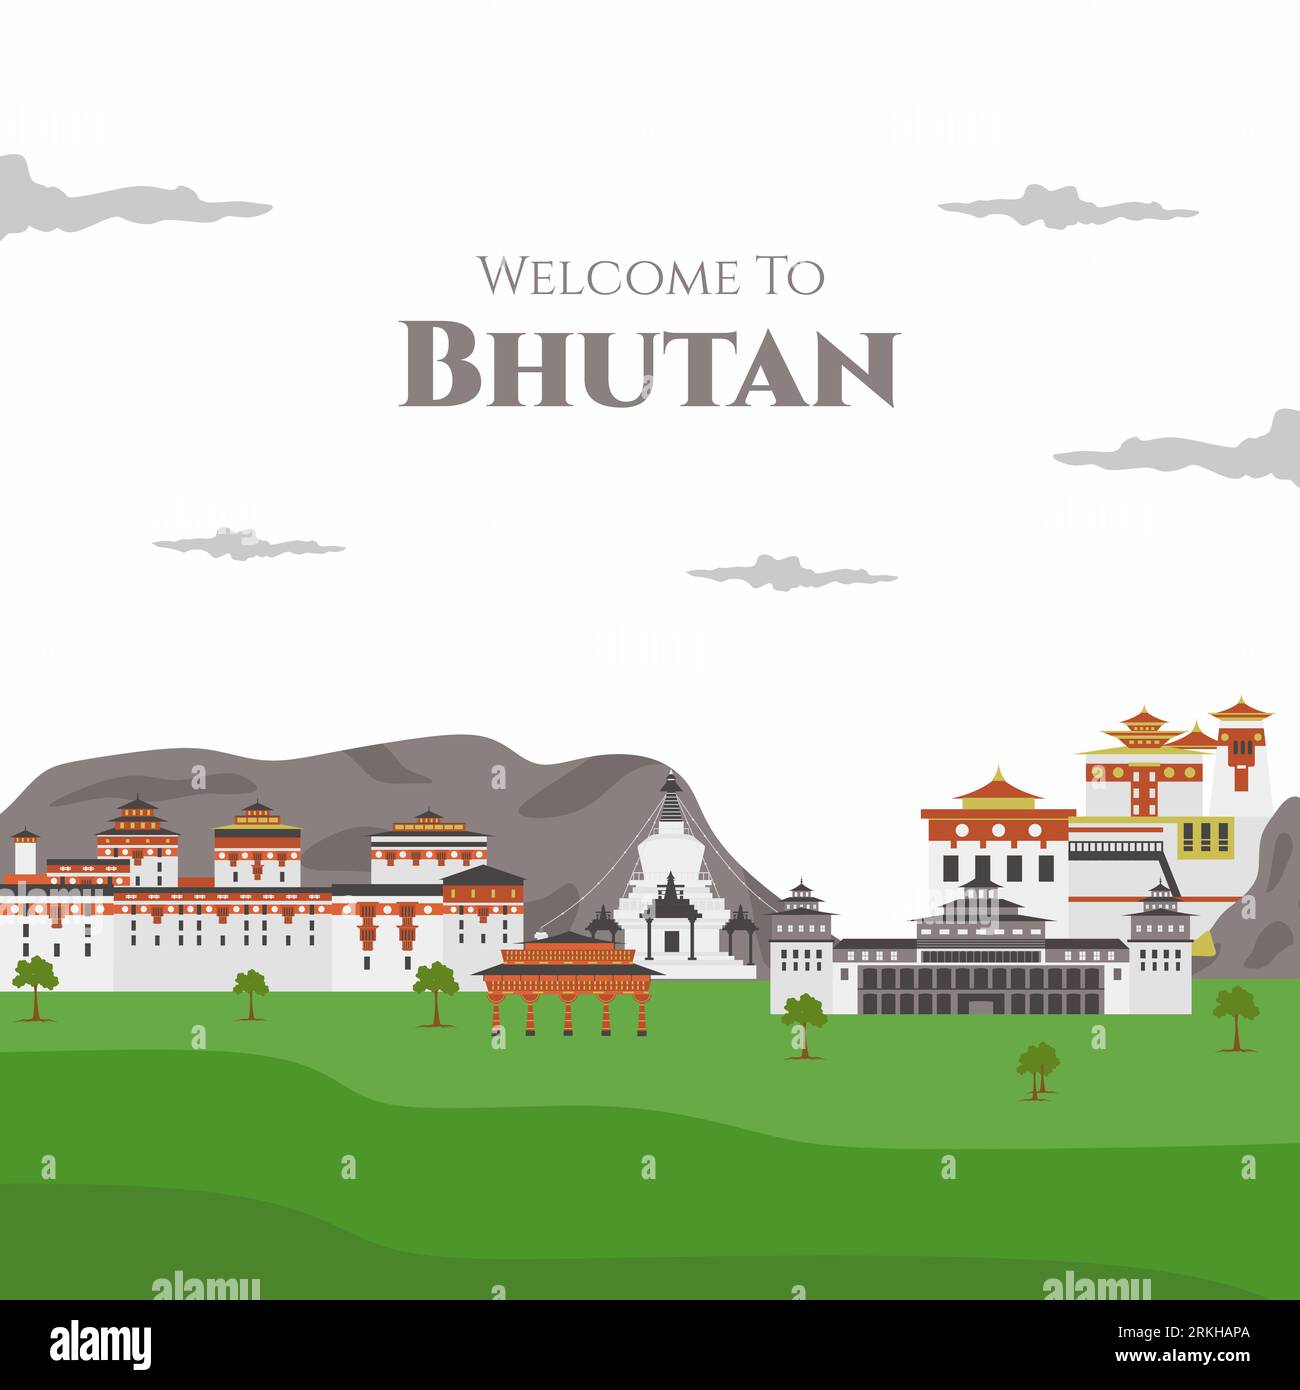 Benvenuti nell'illustrazione di Buthan Vector Flat. Tra gli edifici storici si annoverano Paro Taktsang, Punakha Dzong, Tashichhoedzong, National Memorial Chhorten Illustrazione Vettoriale